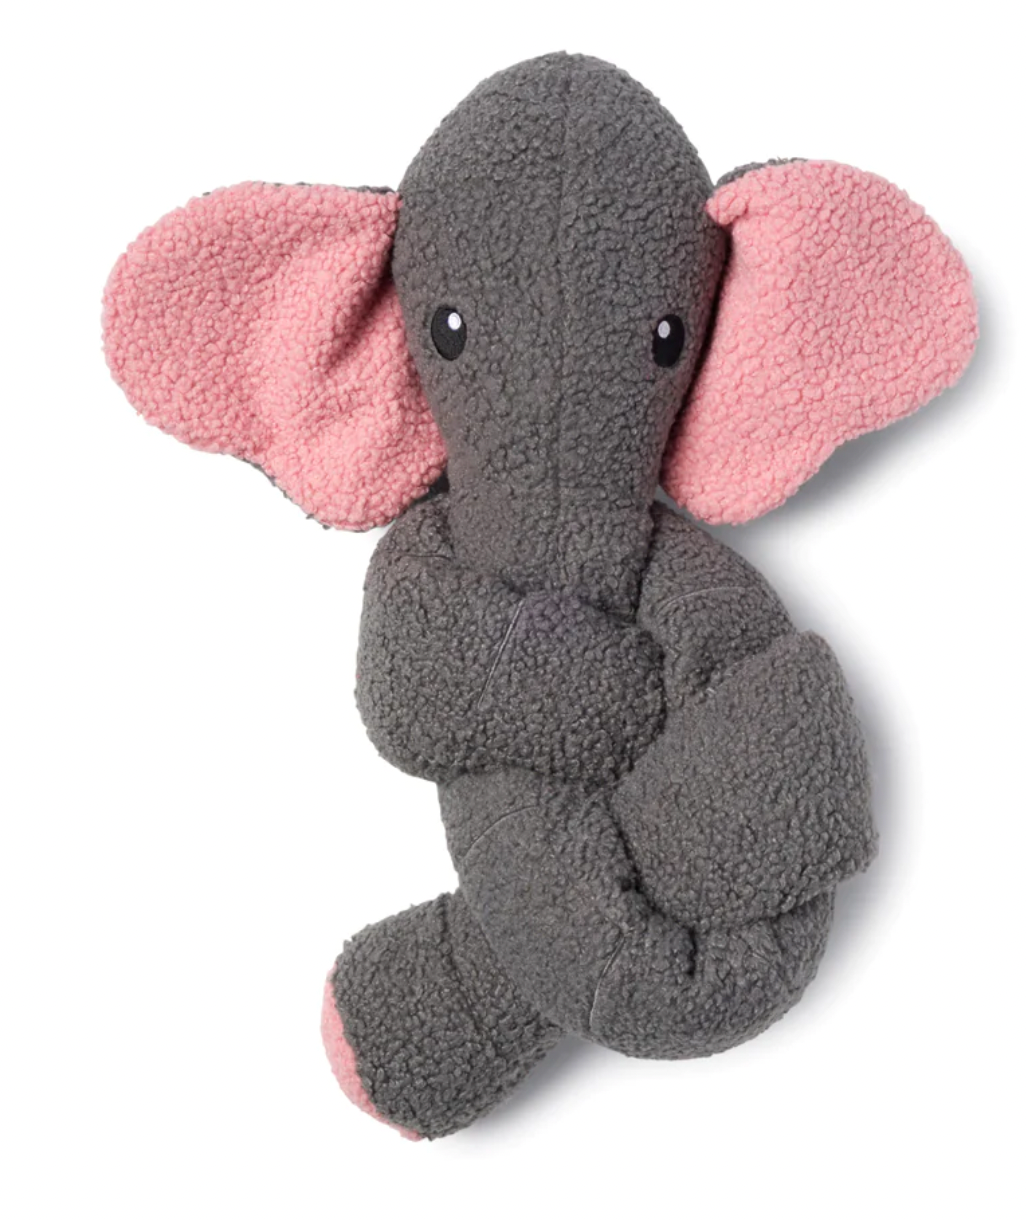 FabDog "Twisty" Crinkle-Squeaky-Plush 5 ft. long Dog Toy, Elephant